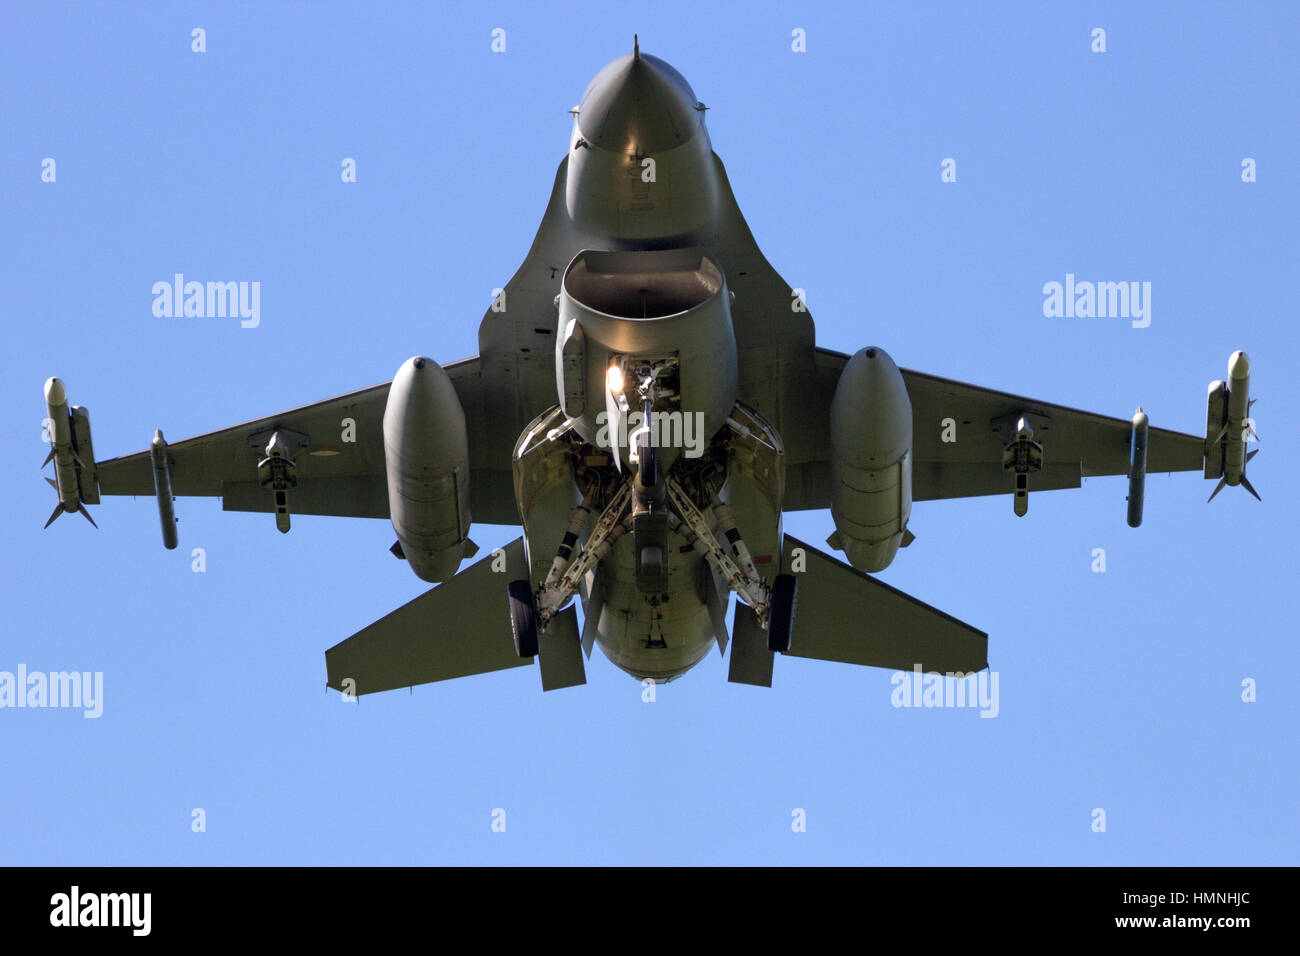 LEEUWARDEN, Pays-Bas - Apr 11, 2016 : Avant de voir une armée de l'air en avion de chasse F-16. Banque D'Images